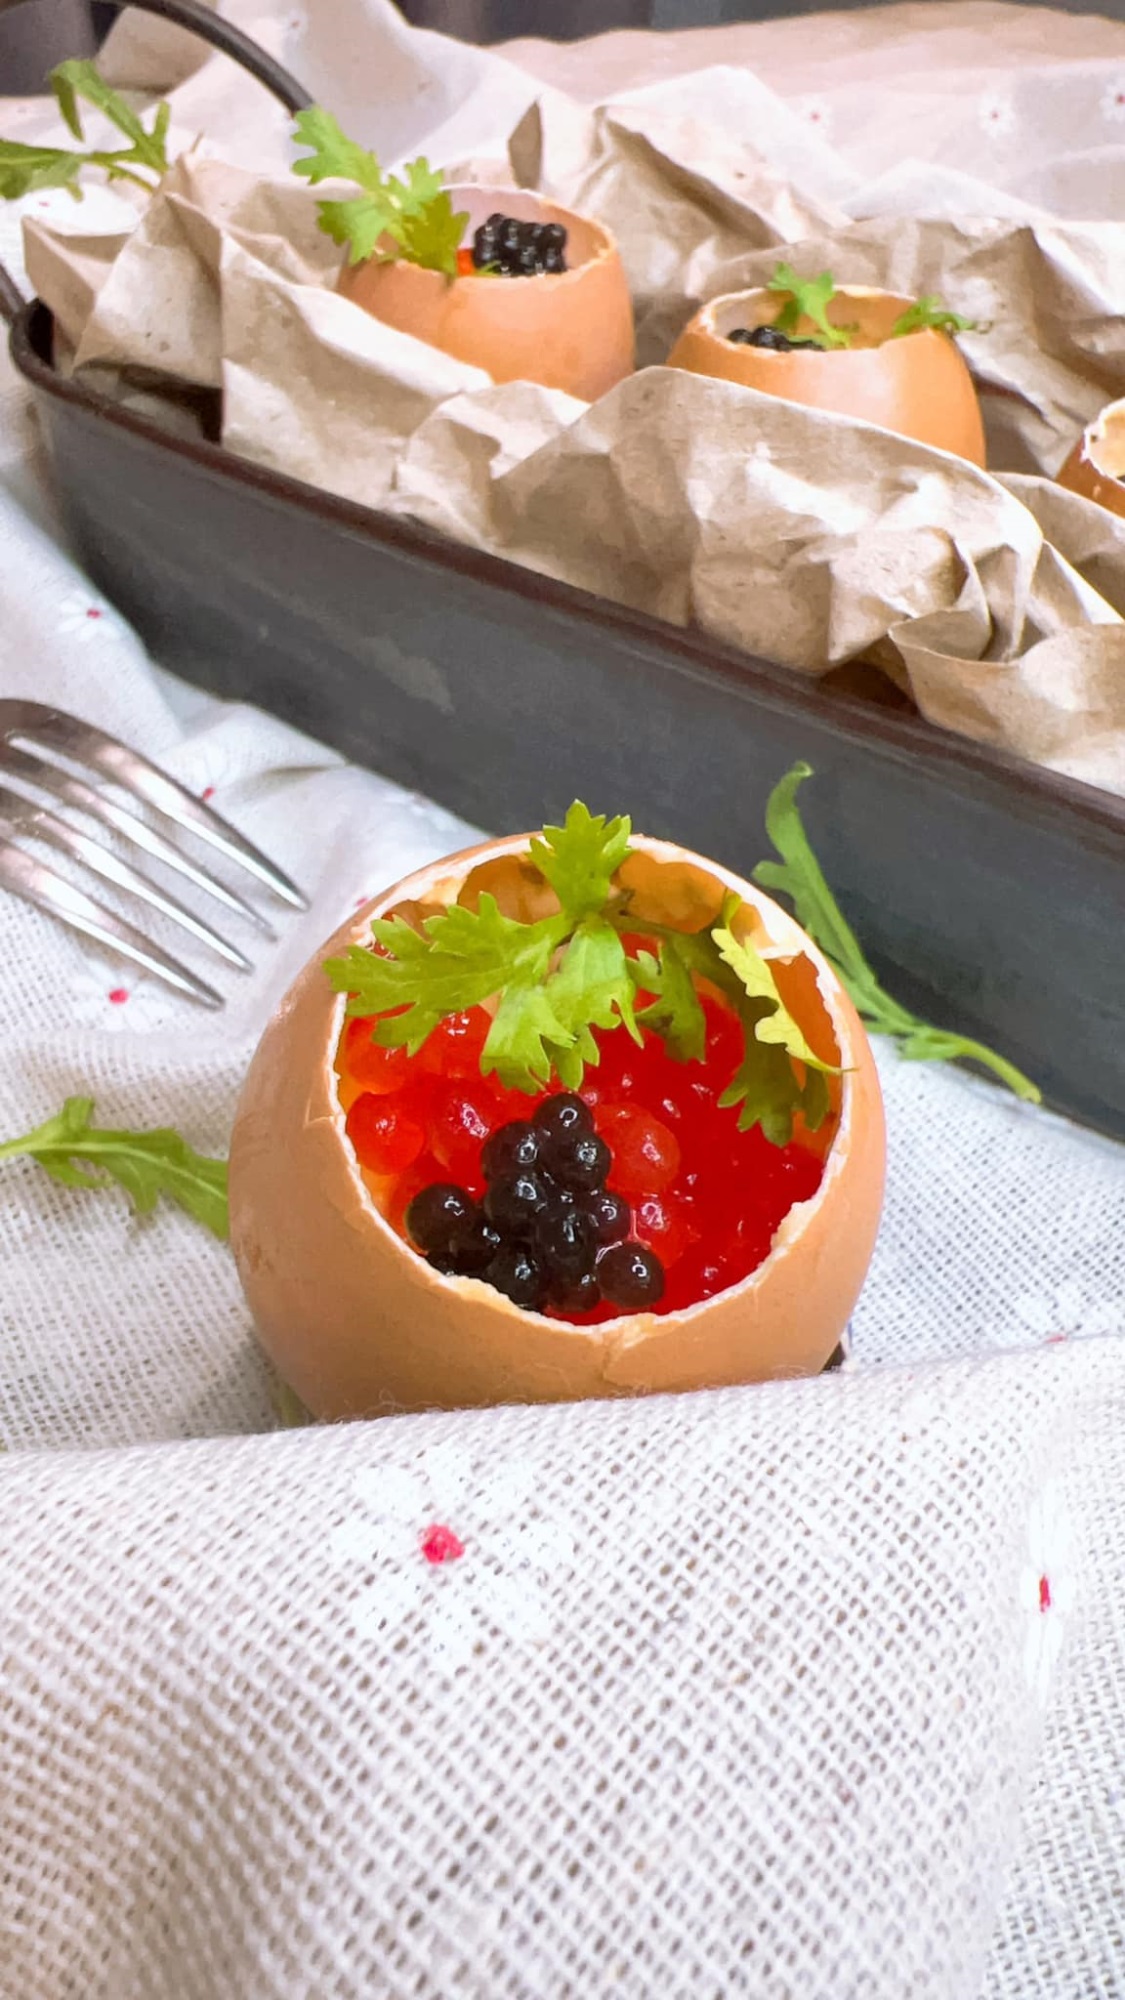 Trứng đánh cùng nấm Truffle đen, món ăn tinh tế đến từ Ý, vừa hợp vị lại vừa hợp nhãn-1